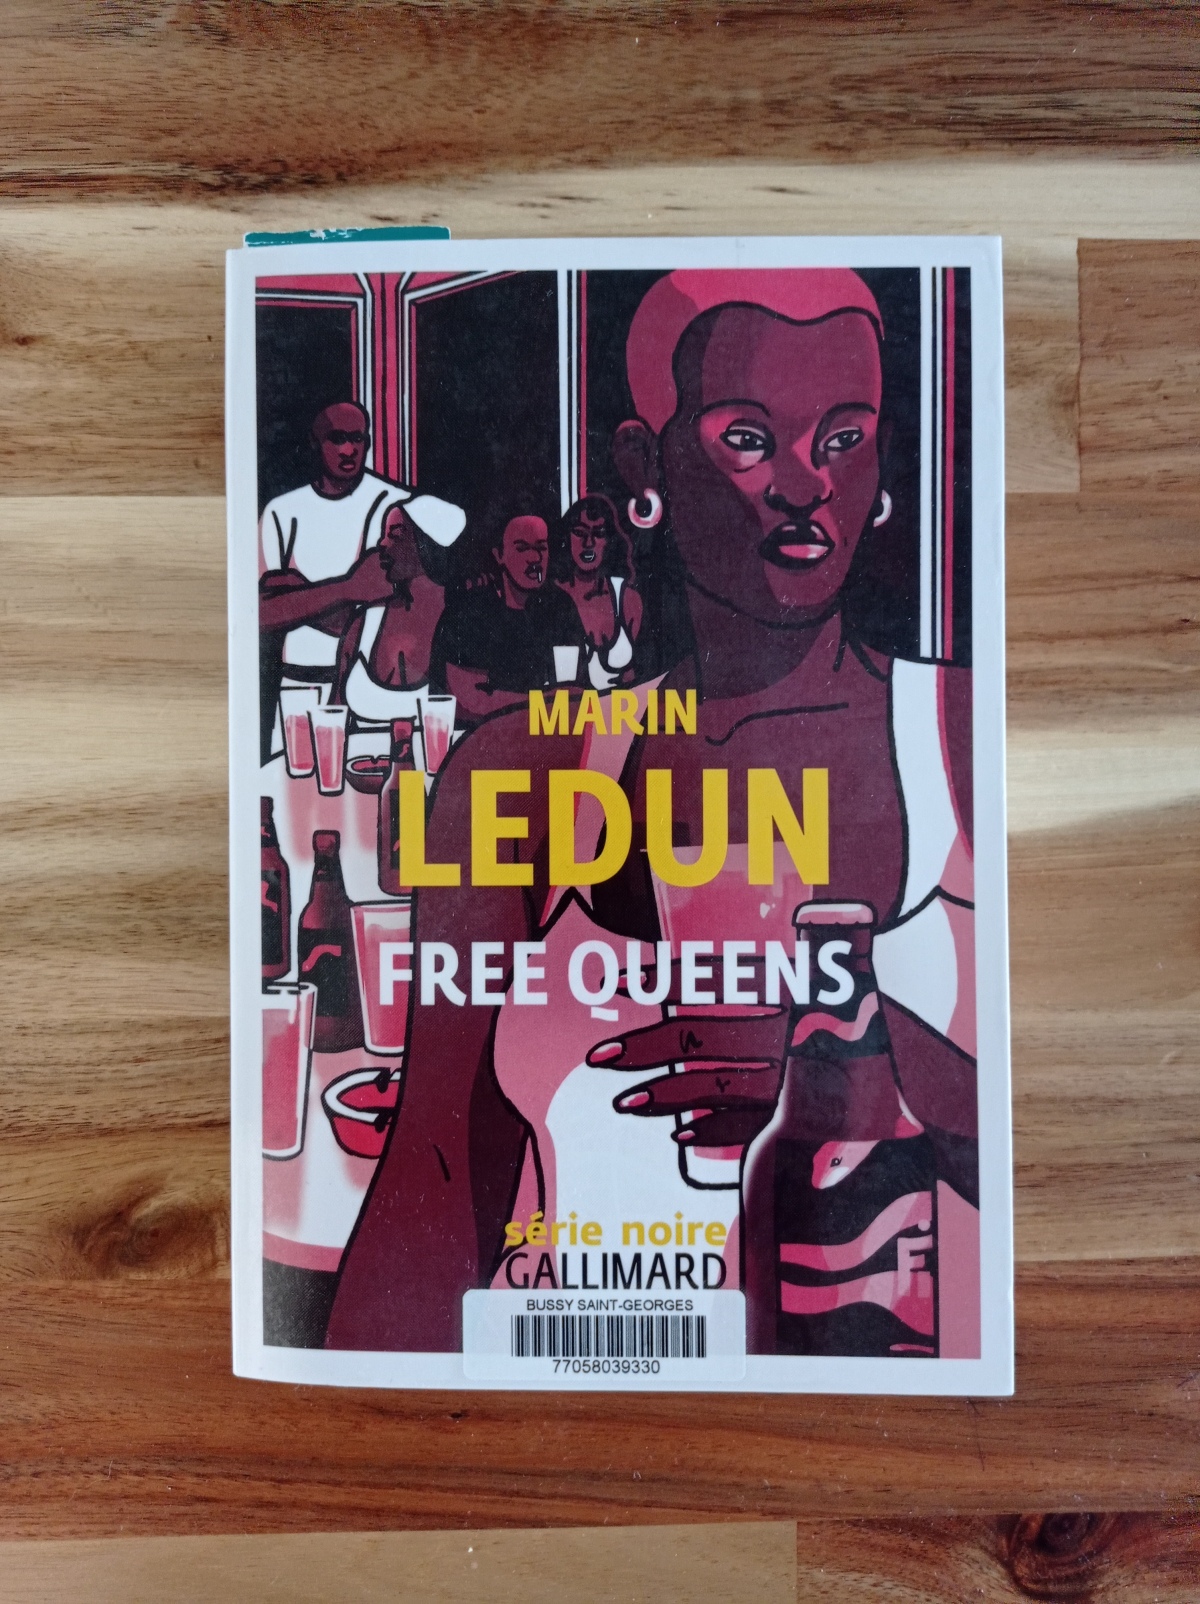 Free Queens / Marin Ledun